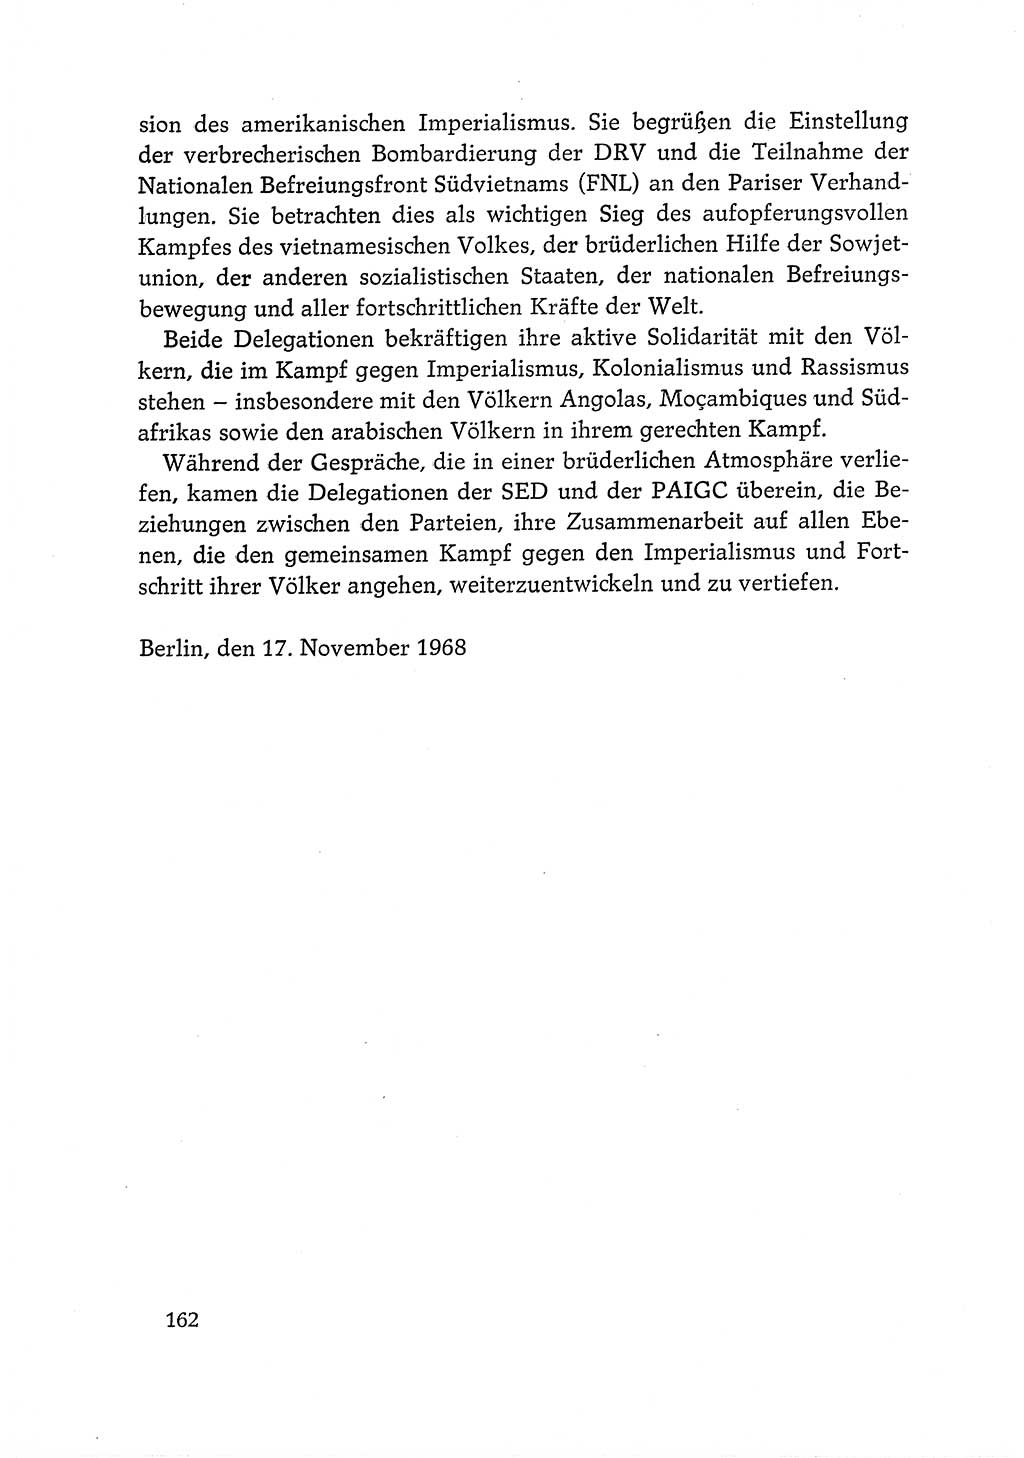 Dokumente der Sozialistischen Einheitspartei Deutschlands (SED) [Deutsche Demokratische Republik (DDR)] 1968-1969, Seite 162 (Dok. SED DDR 1968-1969, S. 162)